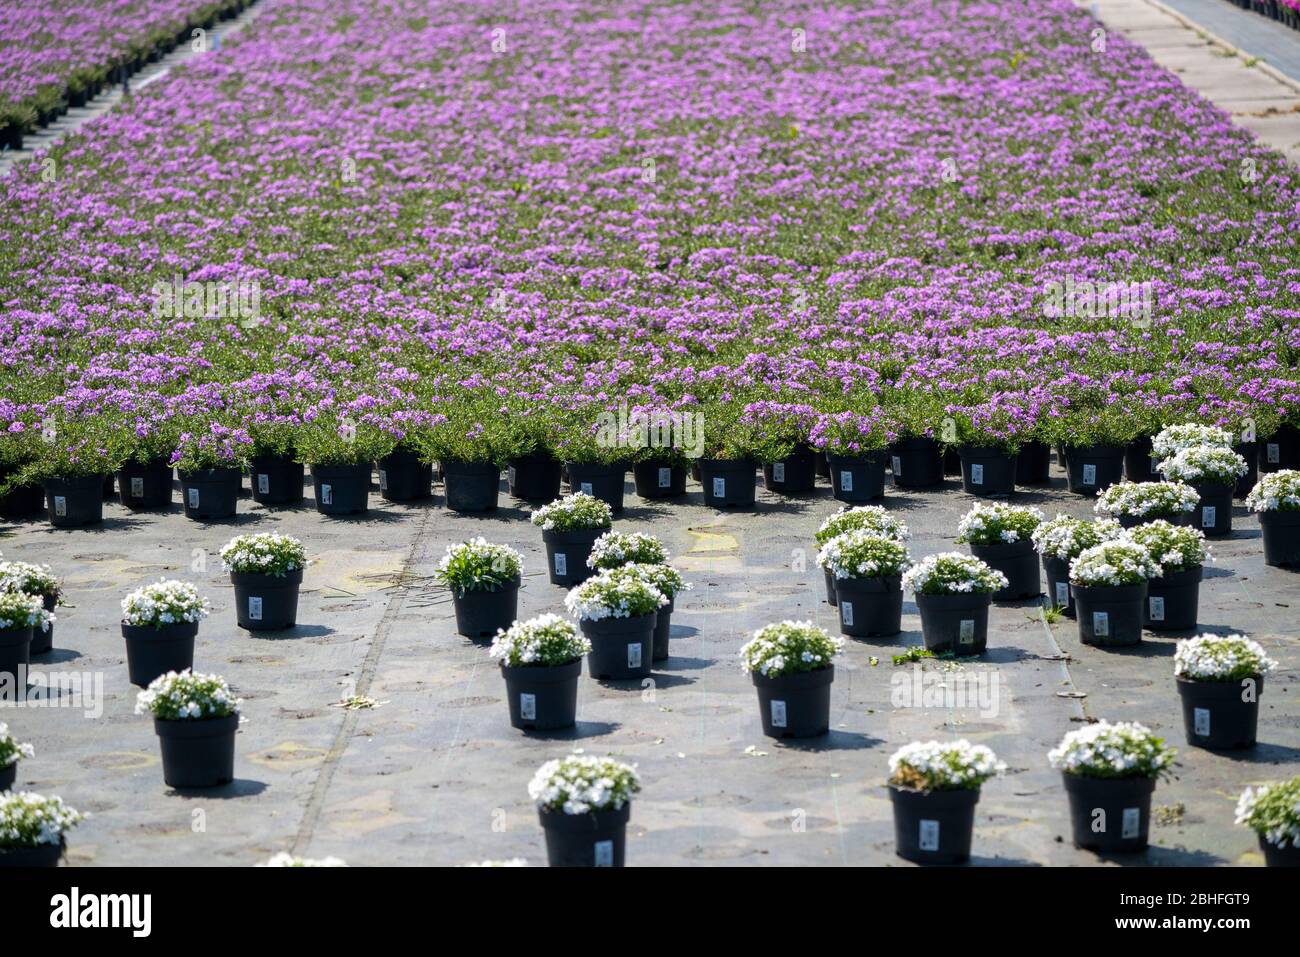 Gärtnerei, Pflanzenzucht, Zierpflanzen wachsen in Blumentöpfen, im Freiland,  Düsseldorf-Volmerswerth, Deutschland, Stock Photo